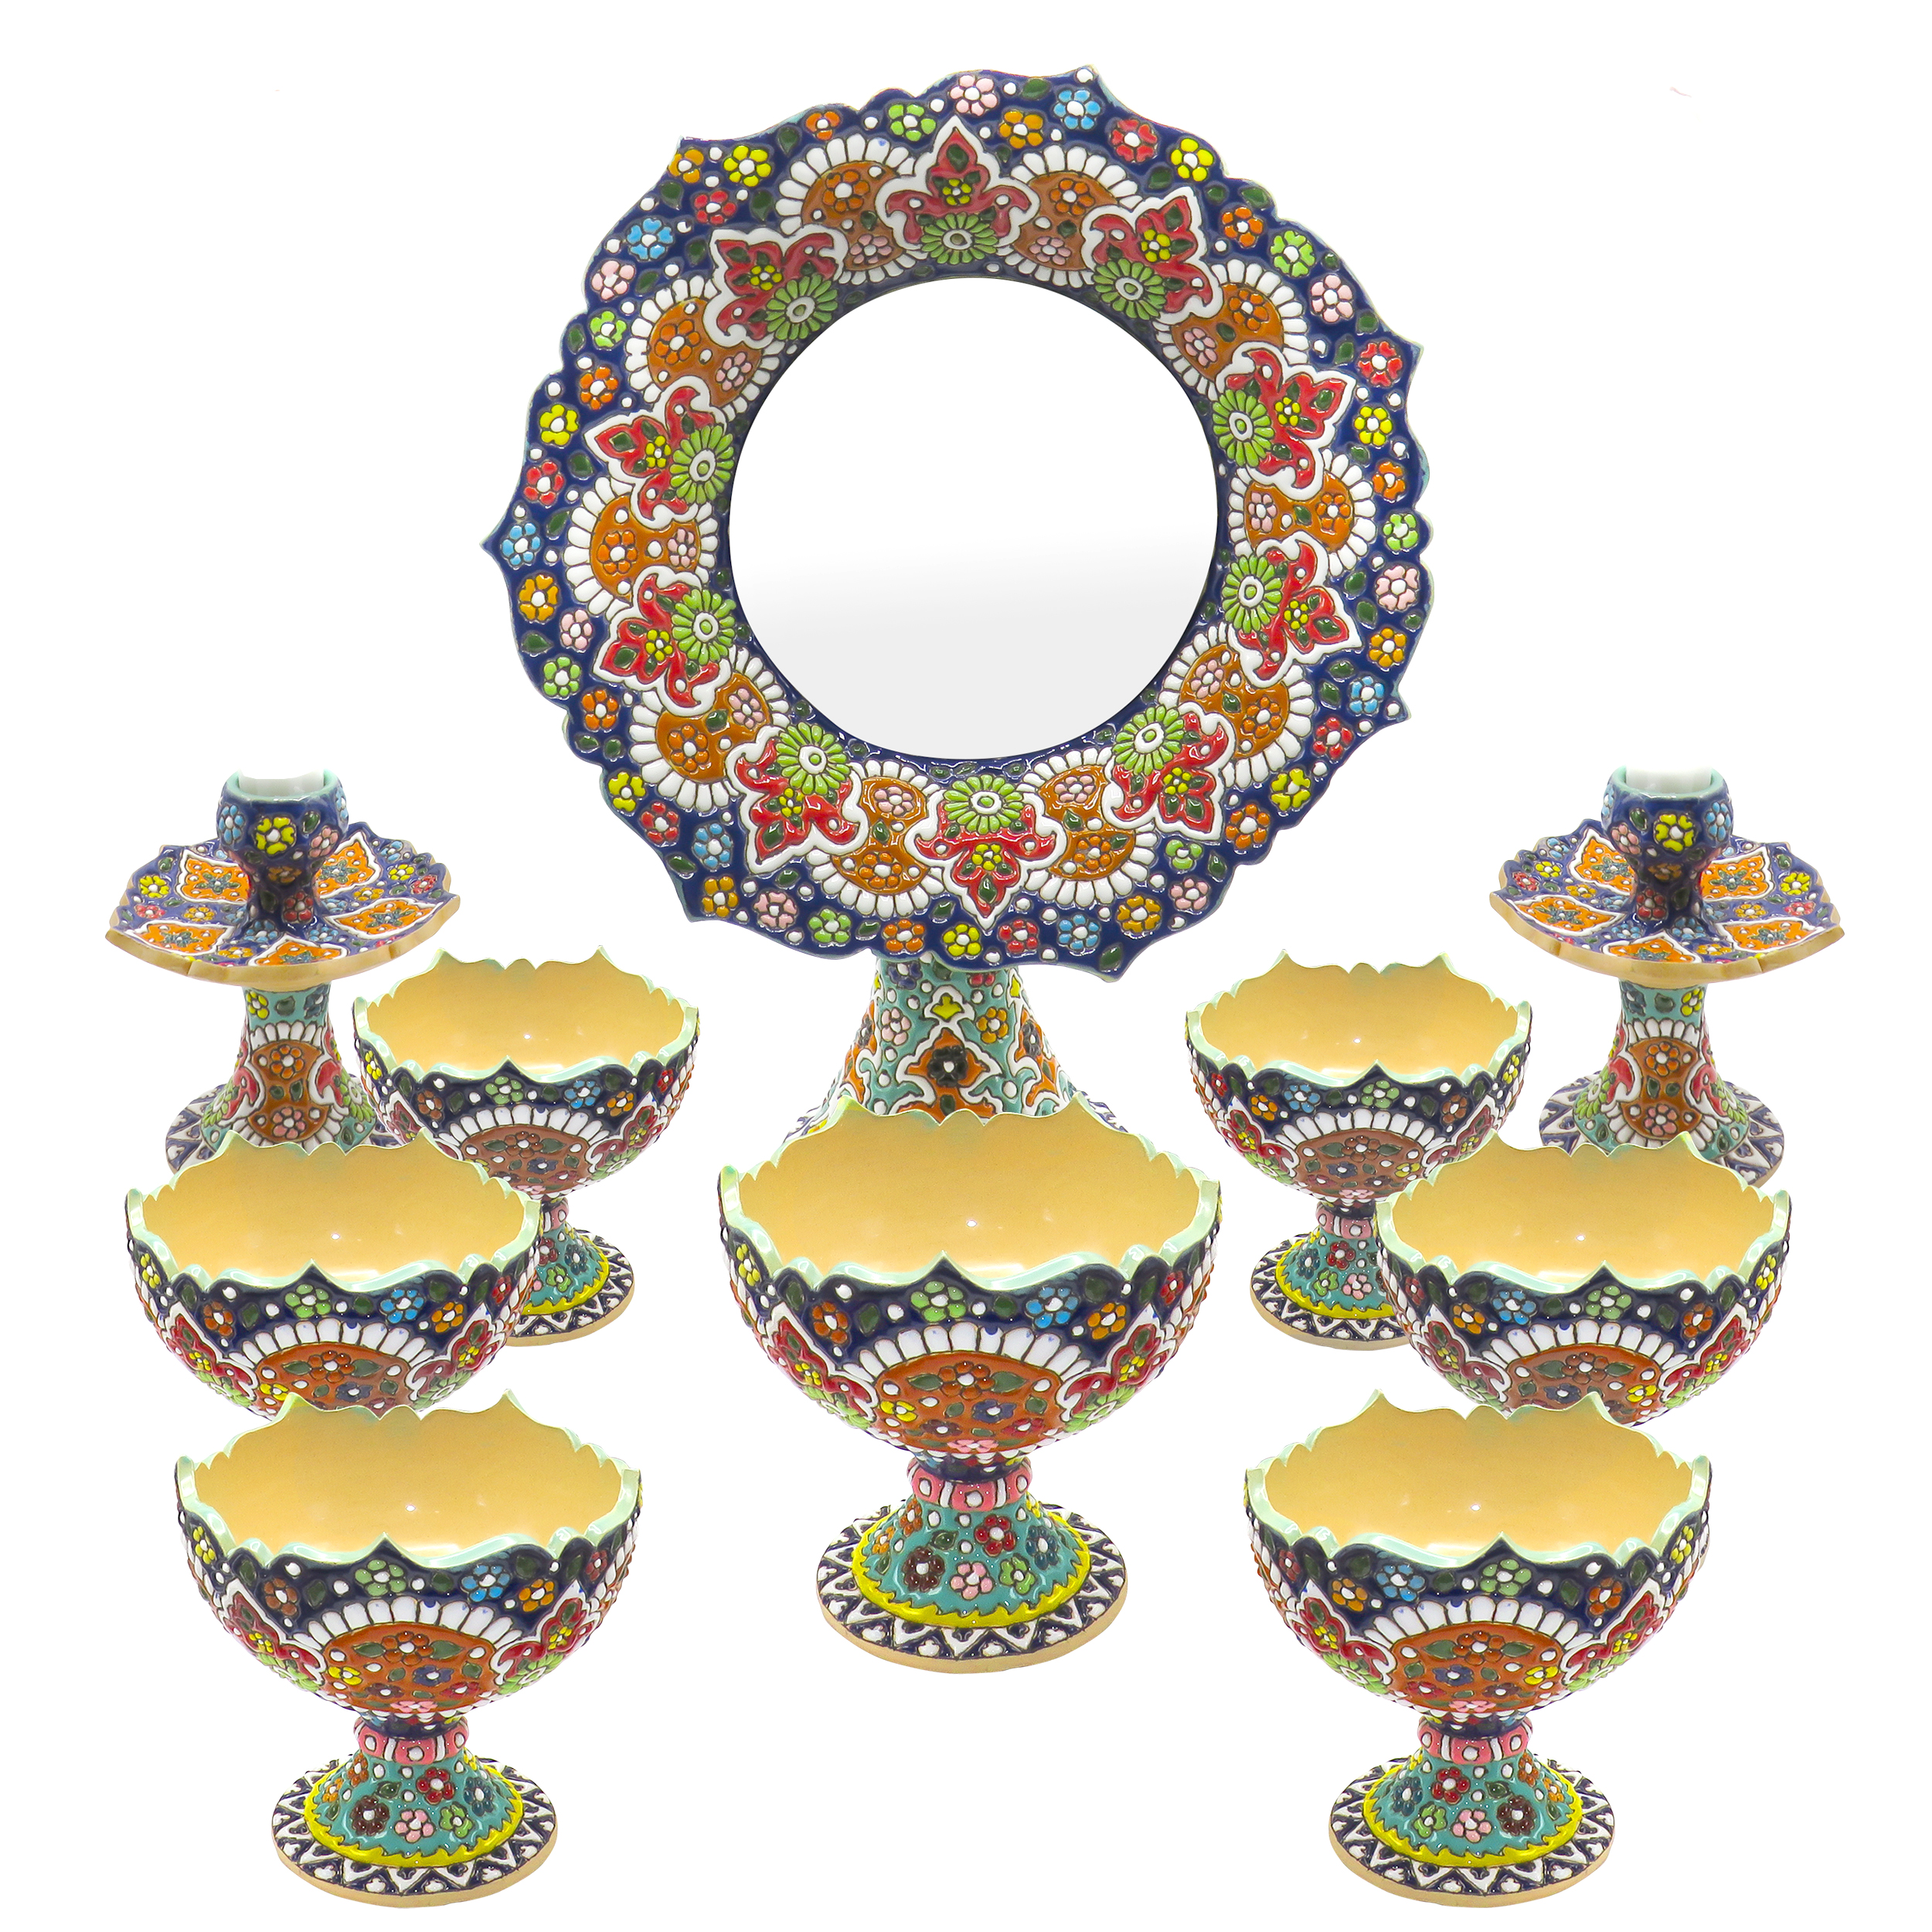 آنباکس مجموعه ظروف هفت سین ده پارچه مینا کاری شده مدل 13-Arghava توسط شقایق عمادی در تاریخ ۲۷ اسفند ۱۴۰۰